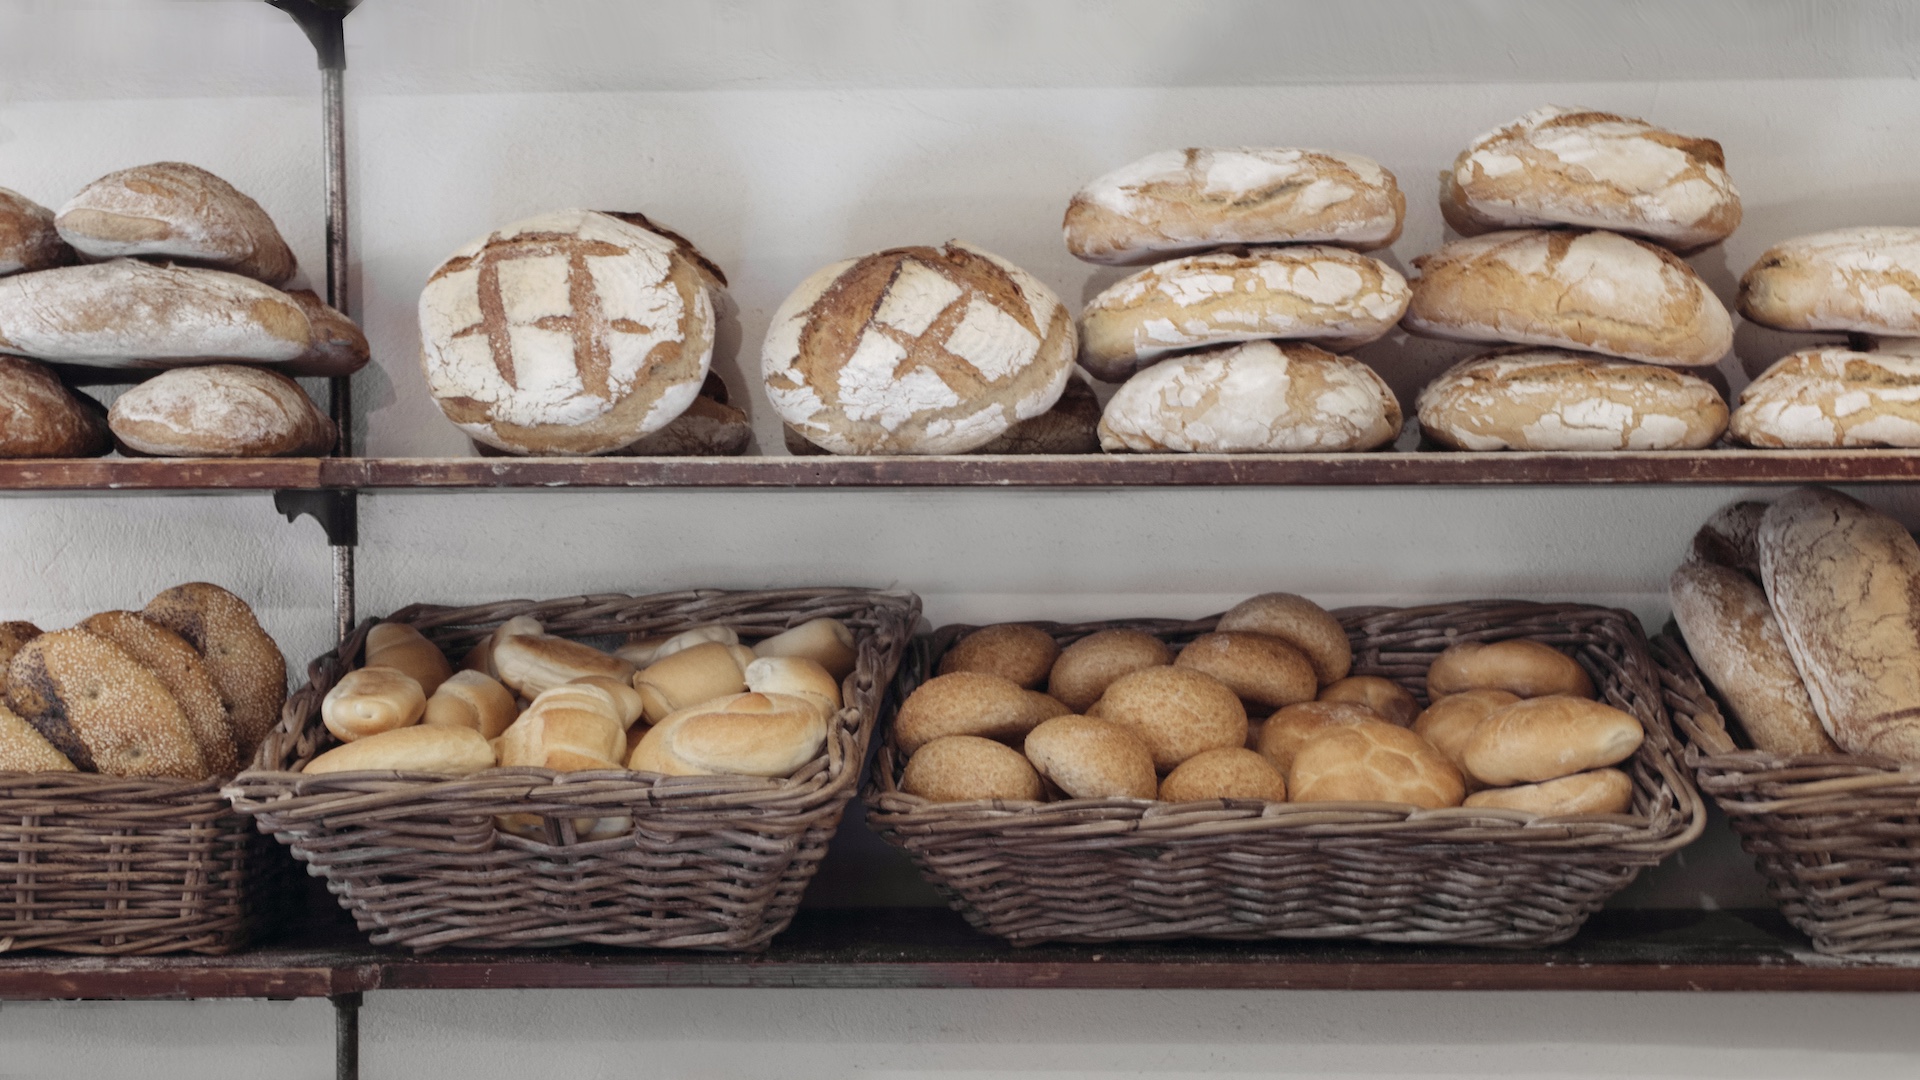 Pane del s.forno e consigli per smaltire il pane vecchio - Riciblog